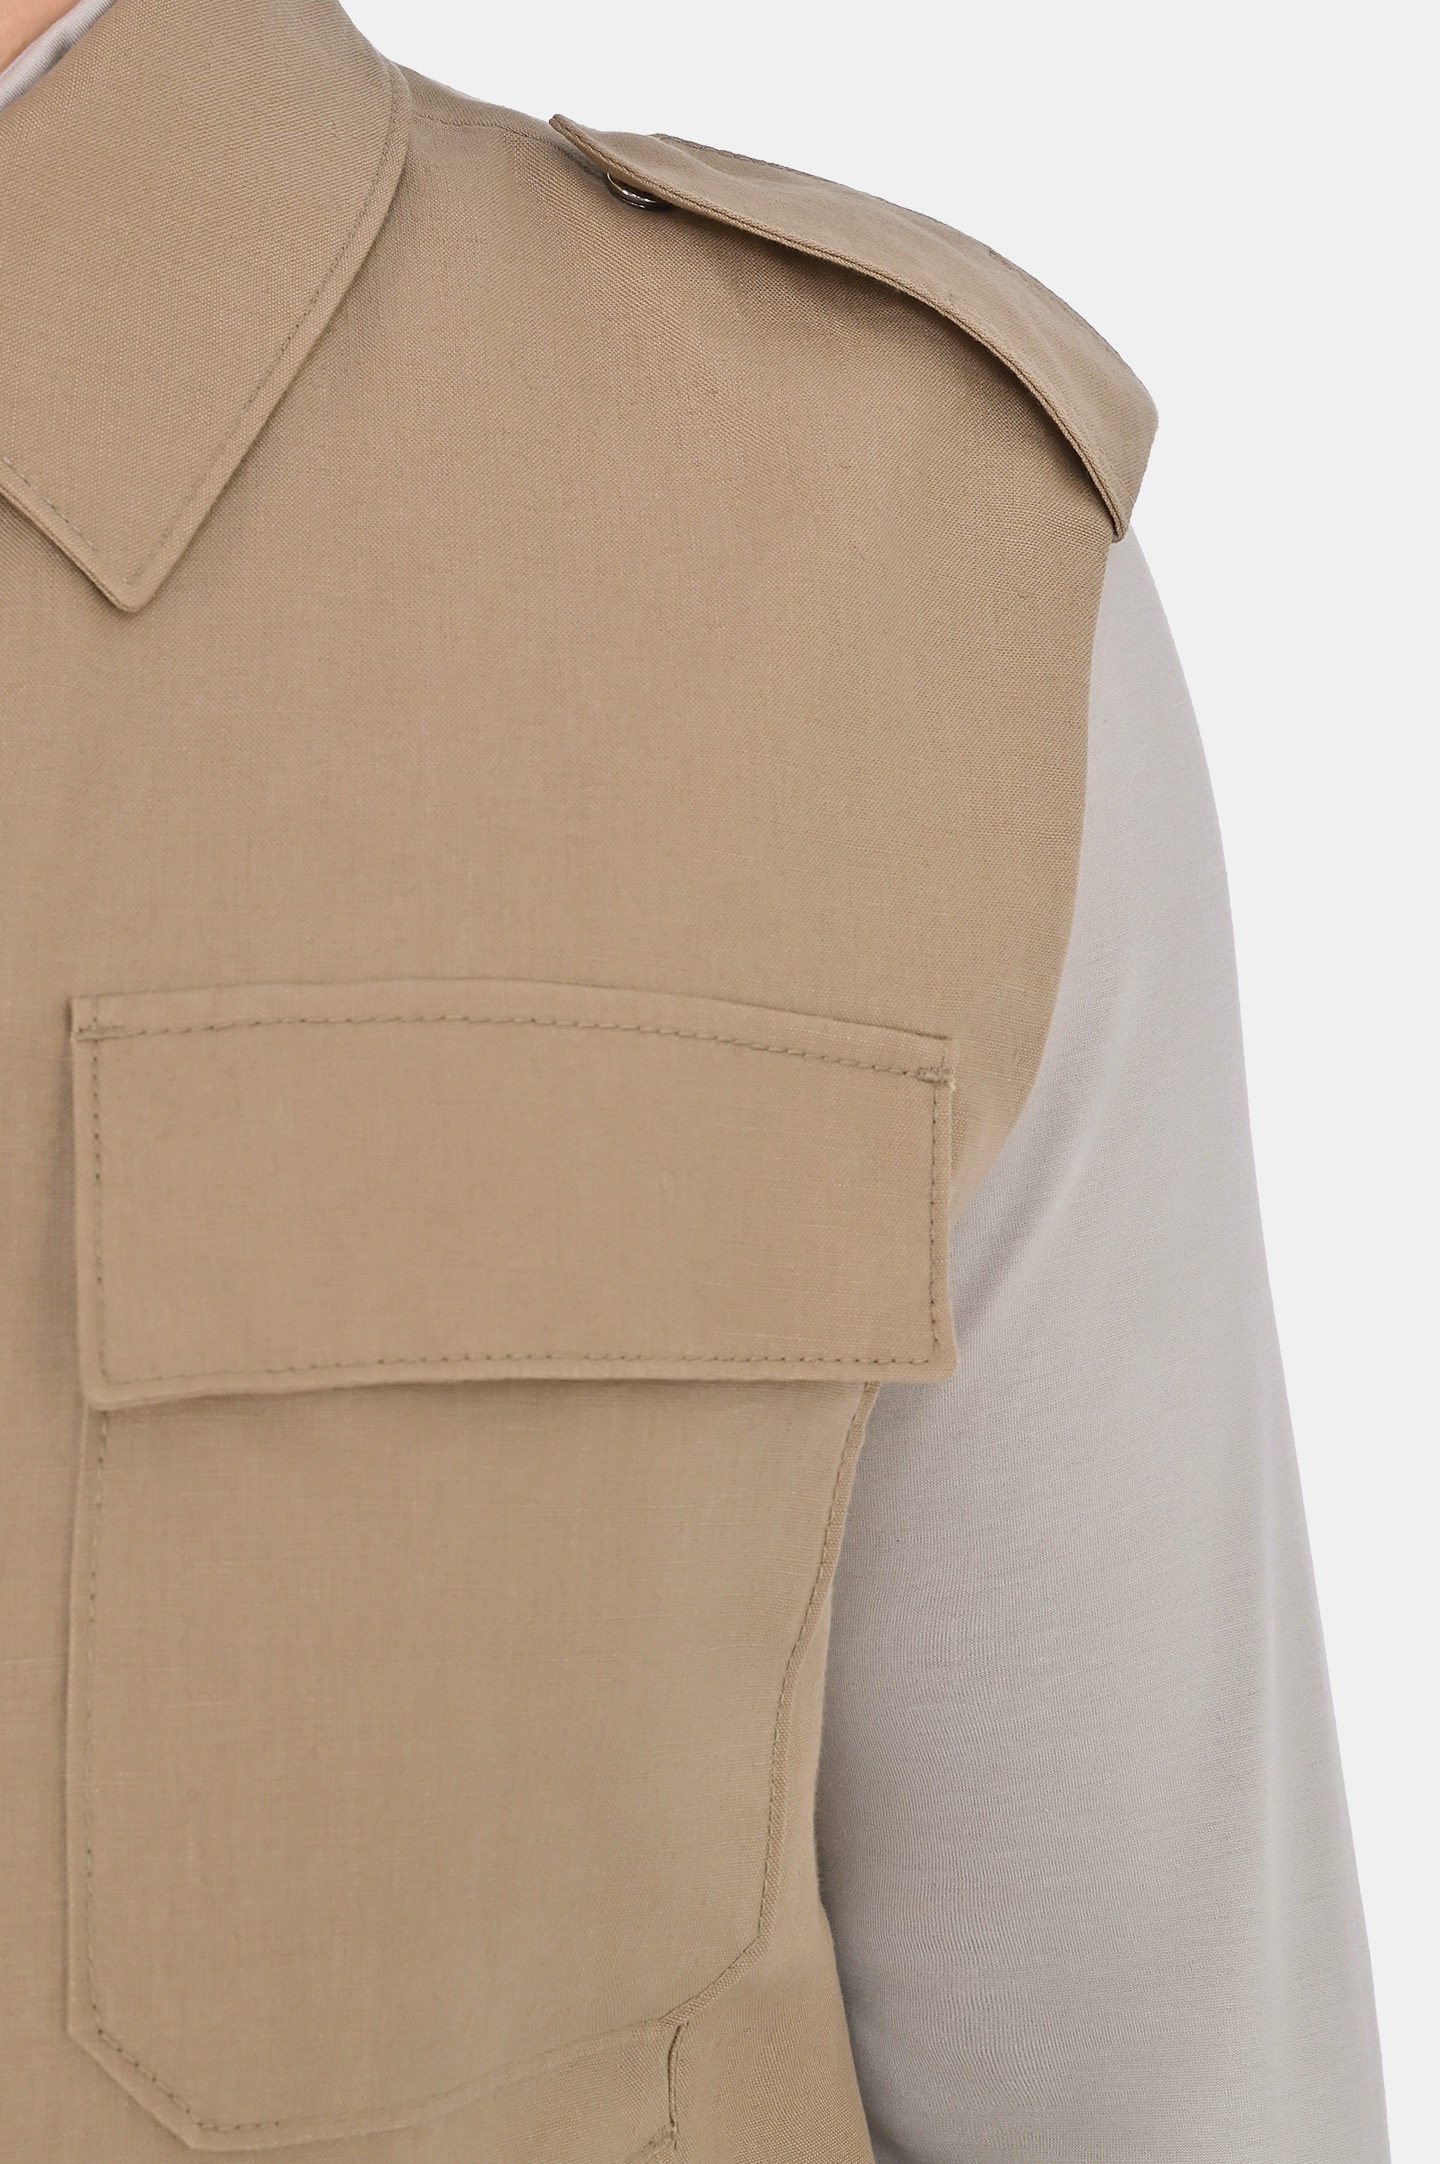 Джинсовые шорты с карманами KITON UFPPBK0604D0, цвет: Бежевый, Мужской